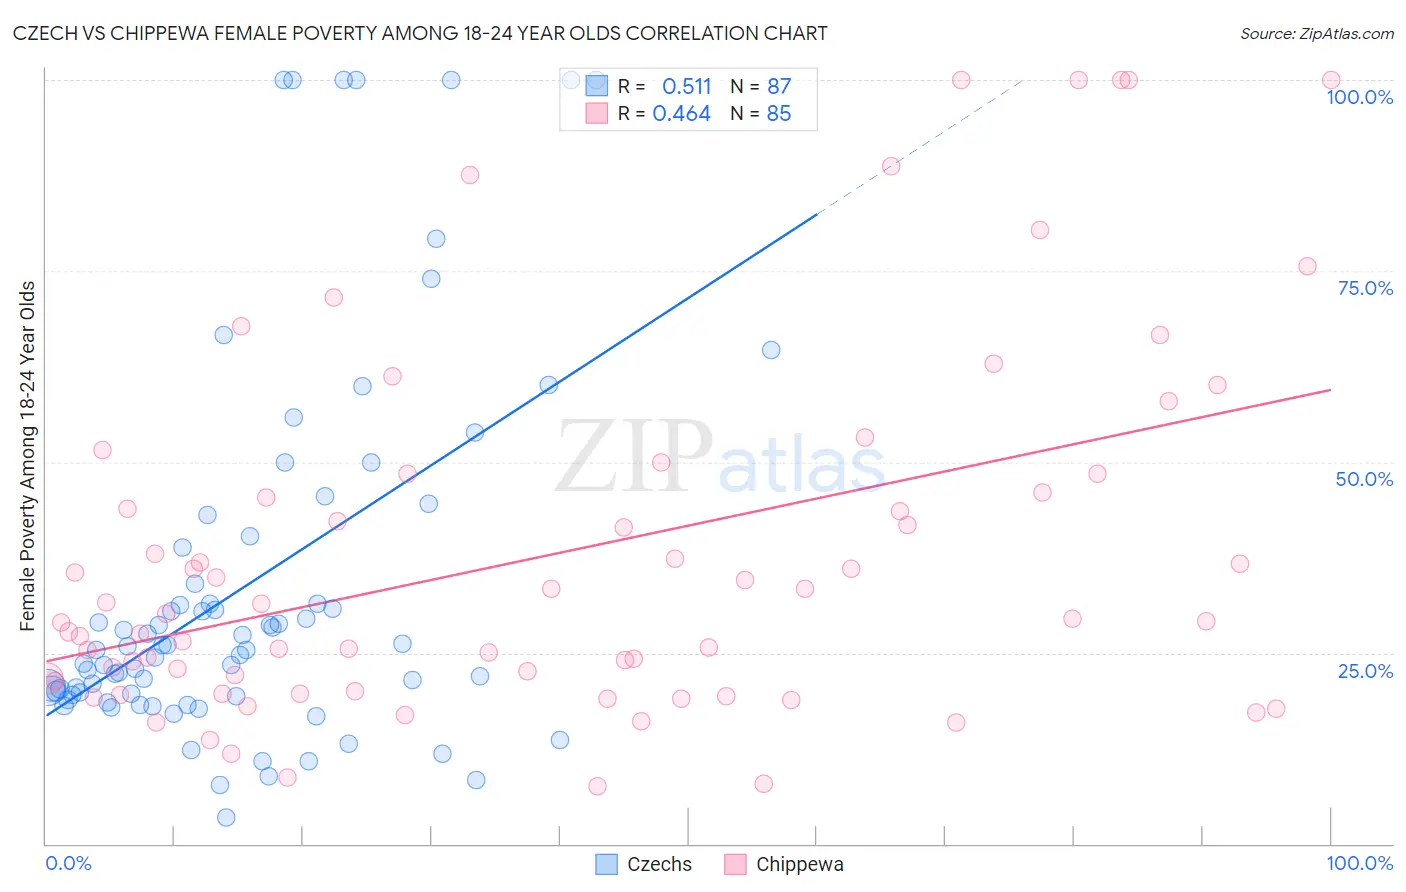 Czech vs Chippewa Female Poverty Among 18-24 Year Olds